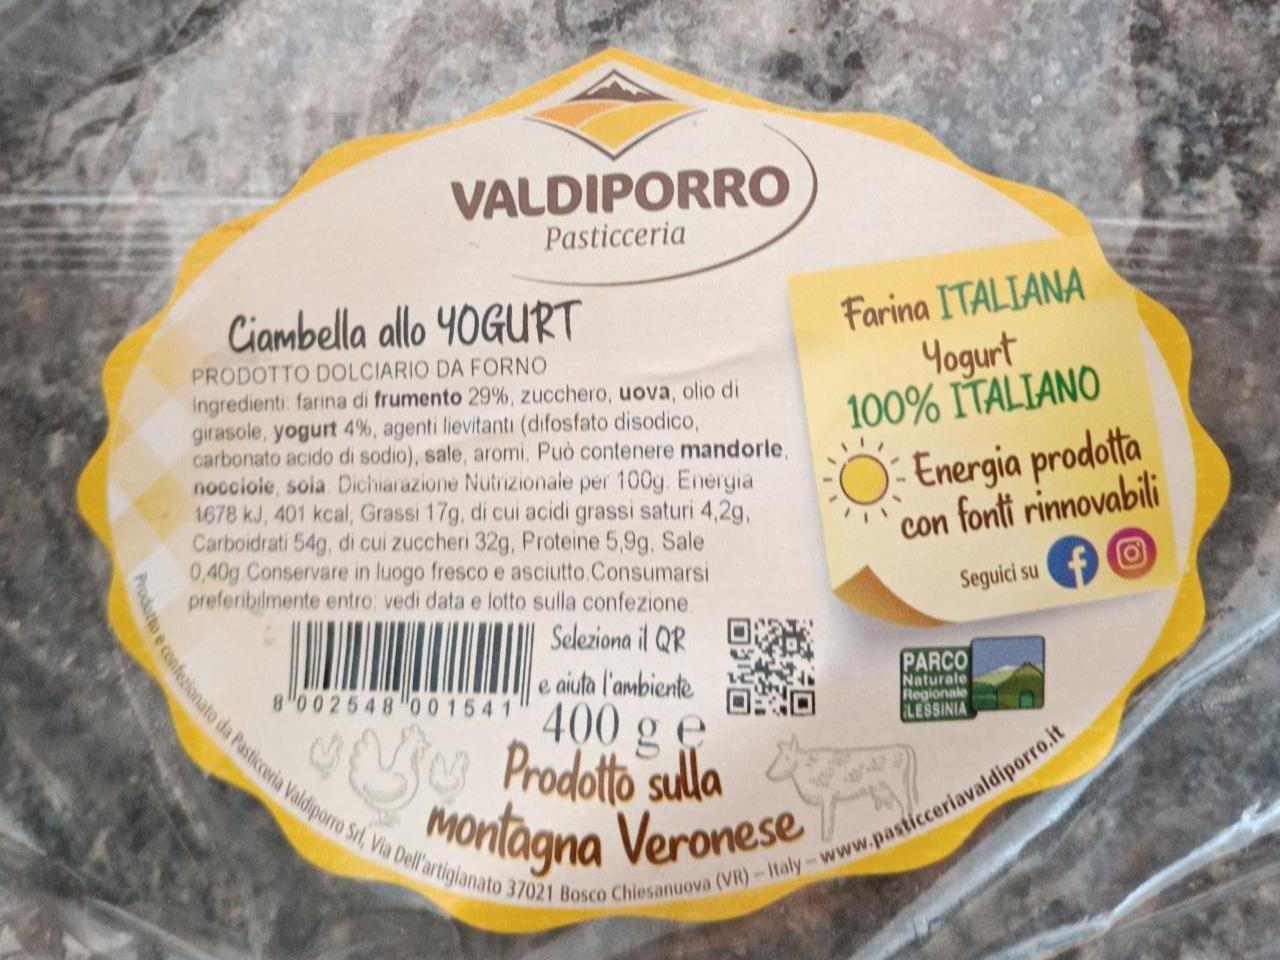 Fotografie - Ciambella allo Yogurt Valdiporro